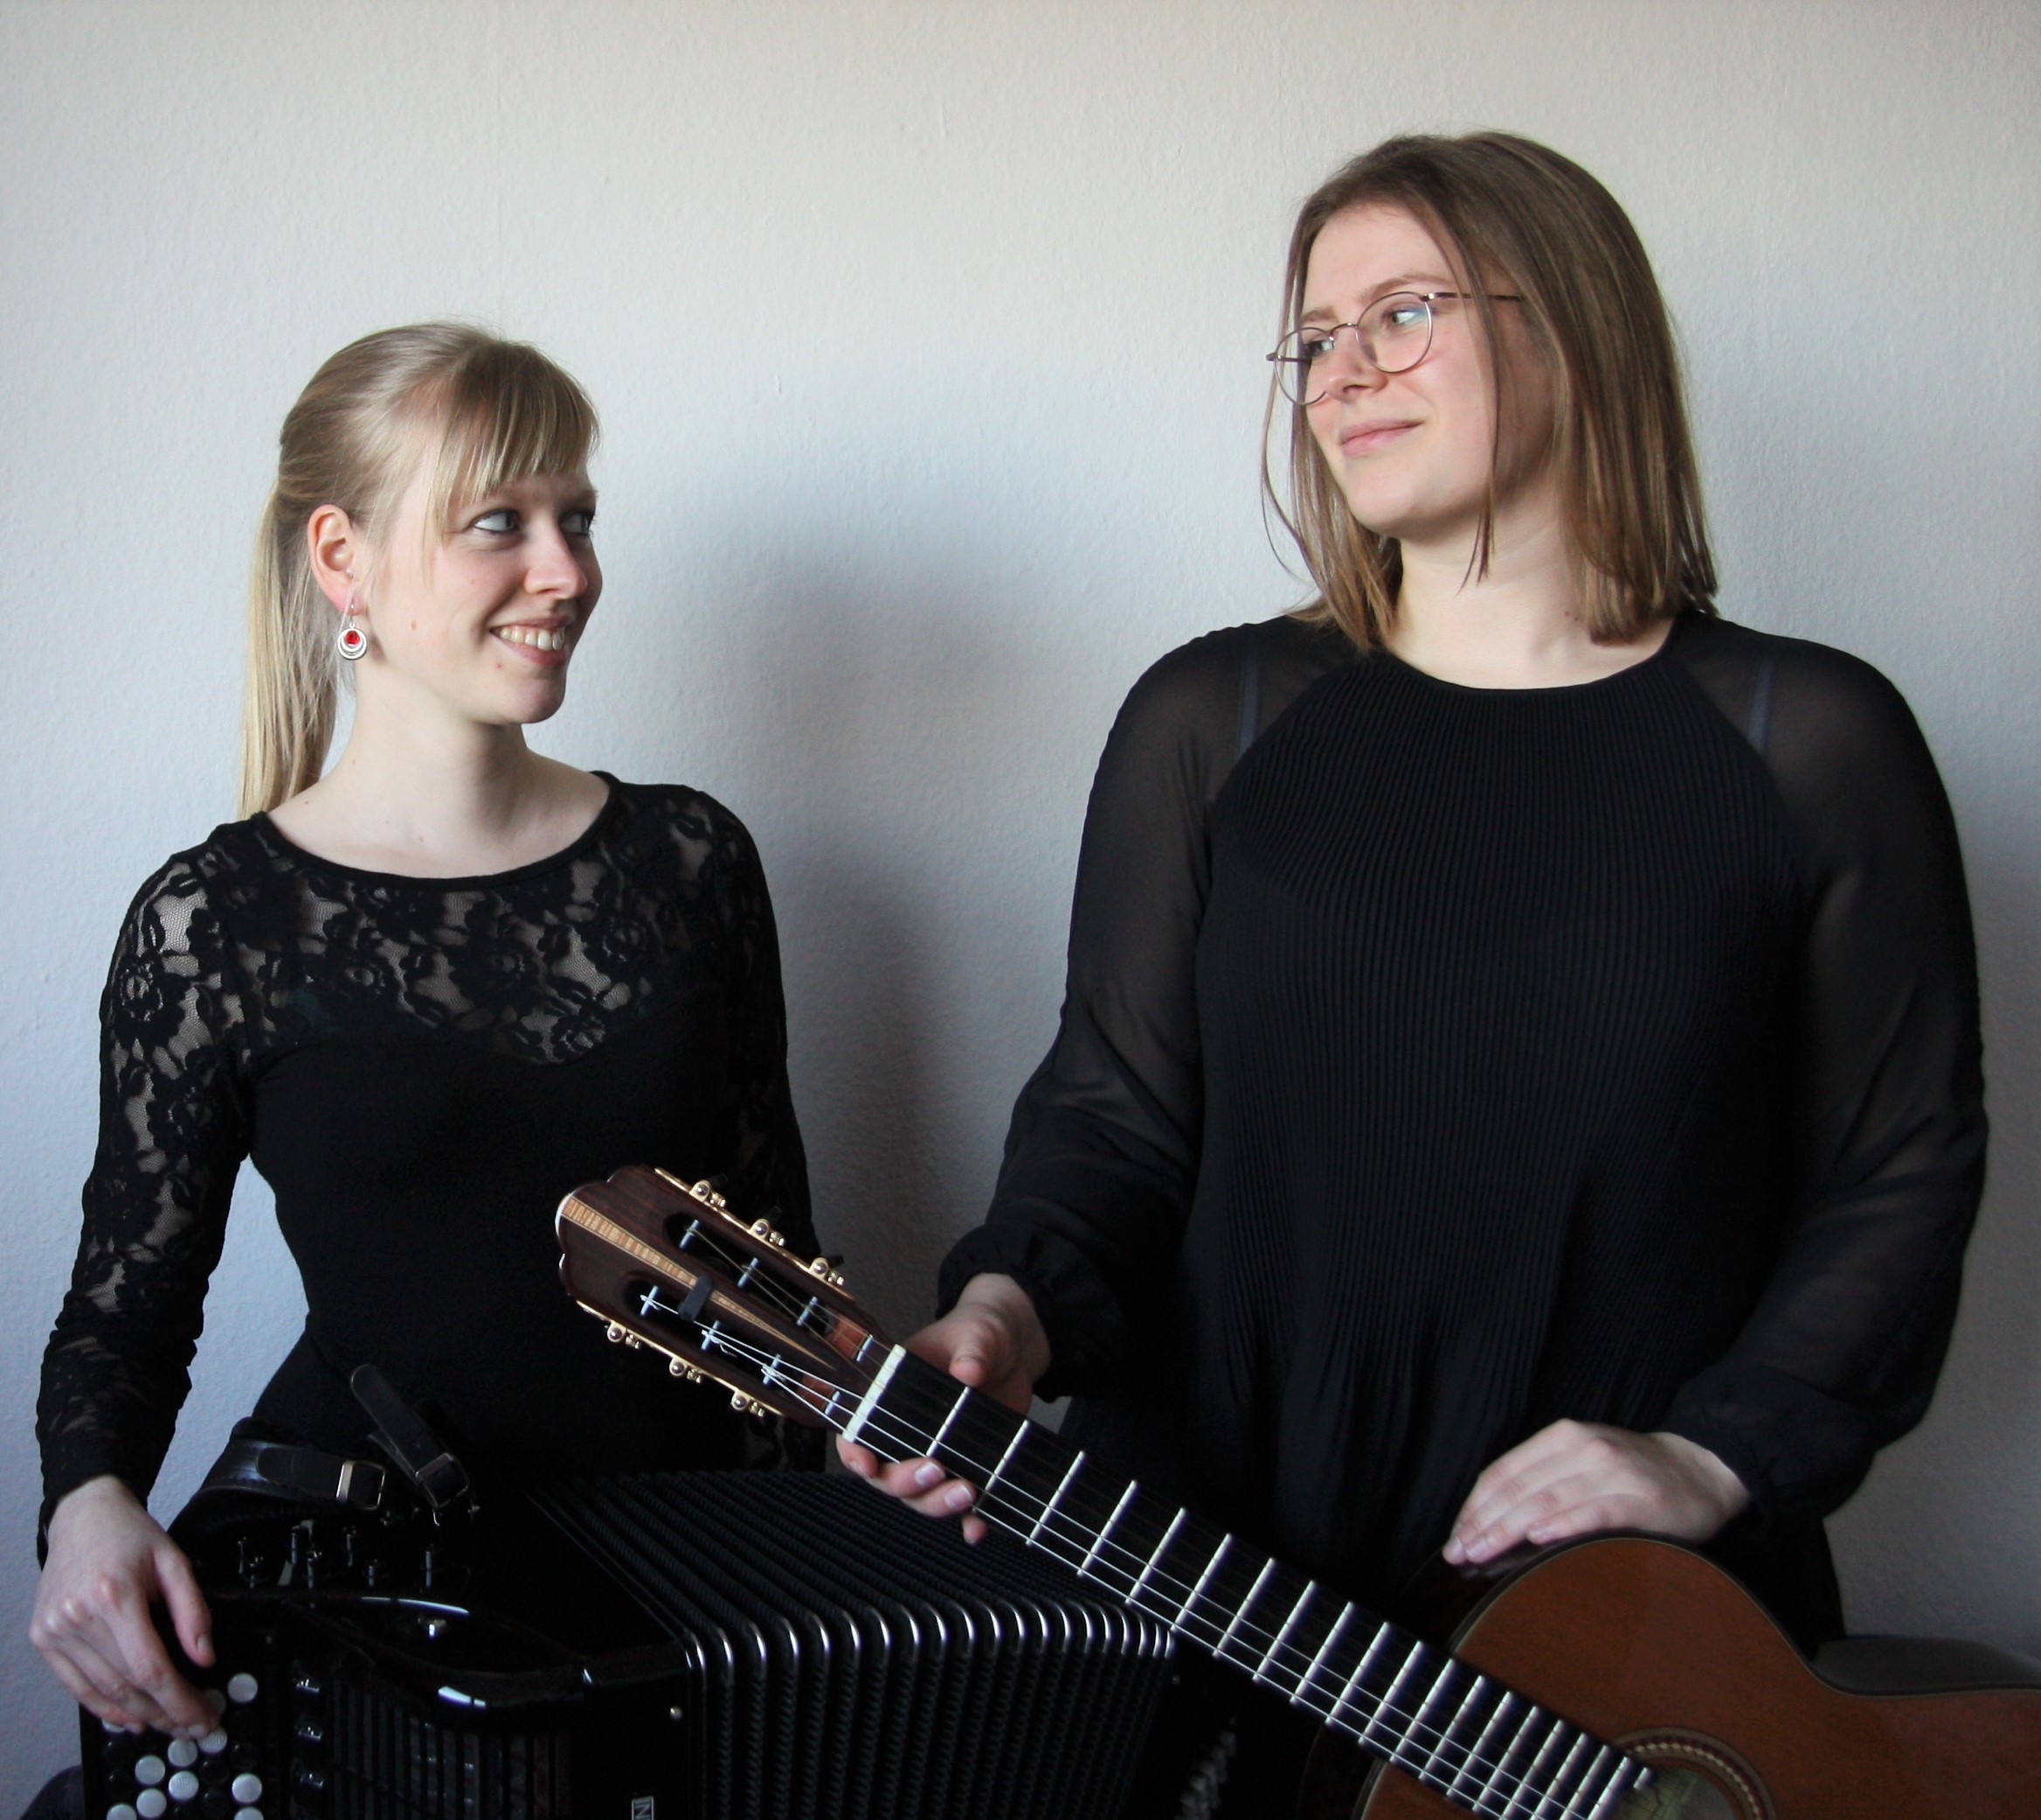 Die beiden Künstlerinnen des Duo Andromeda sitzen nebeneinander mit einem Akkordeon und einer Gitarre und schauen sich an